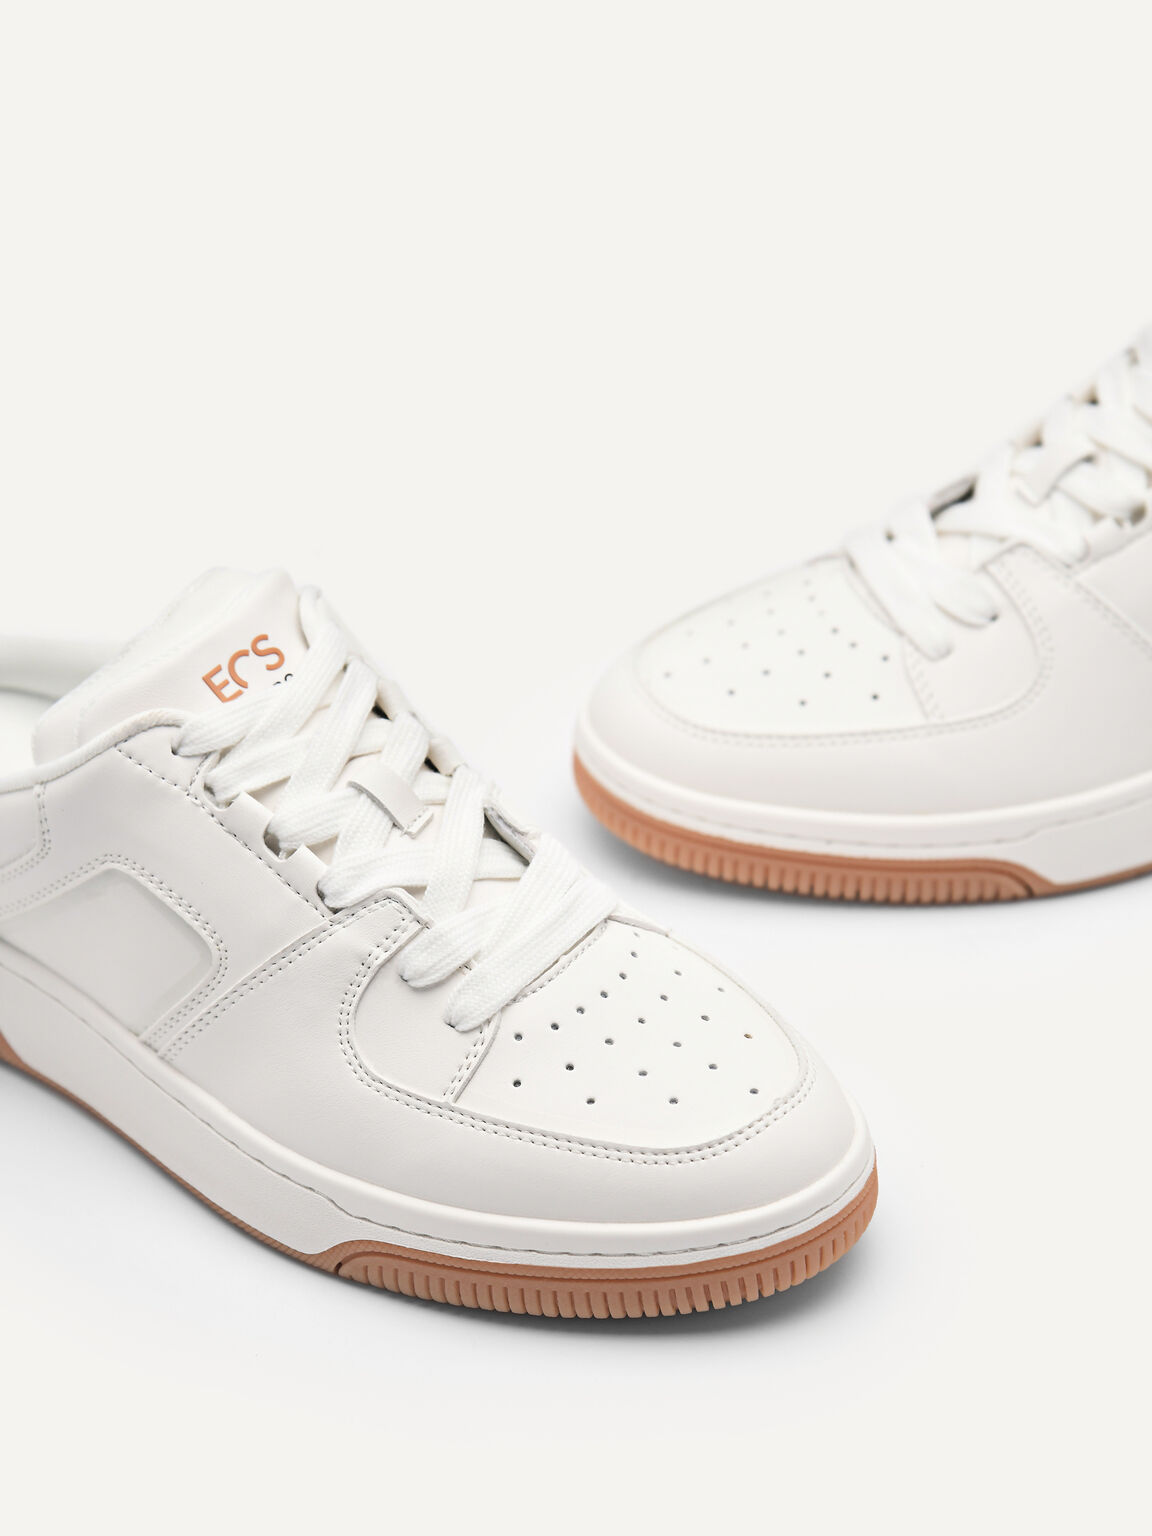 Women's EOS Slip-On Sneakers, White